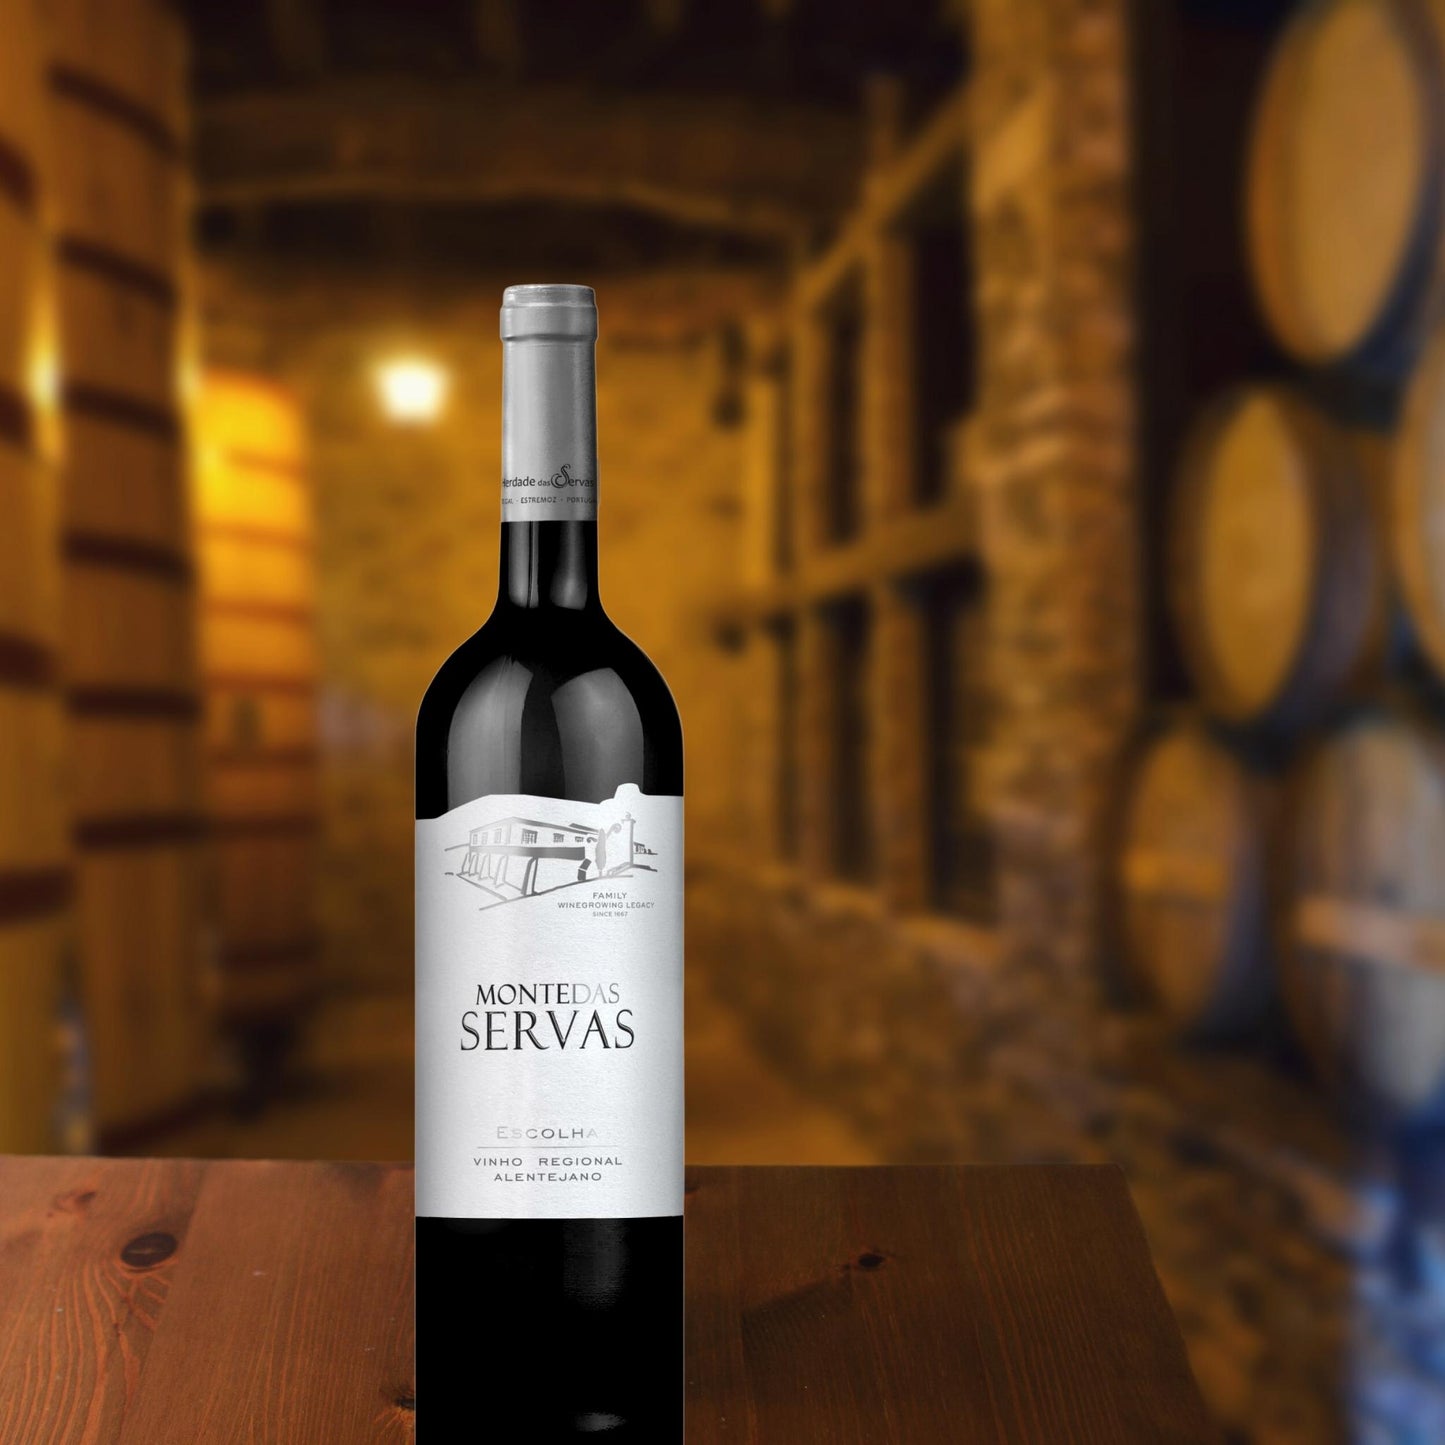 MONTE DAS SERVAS ESCOLHA: Rotwein vom Weingut Herdade das Servas aus der Region Estremoz – Alentejo/Portugal. Flasche in einem Weinkeller auf dem Tisch stehend. Im Hintergrund sind Weinfässer zu sehen.